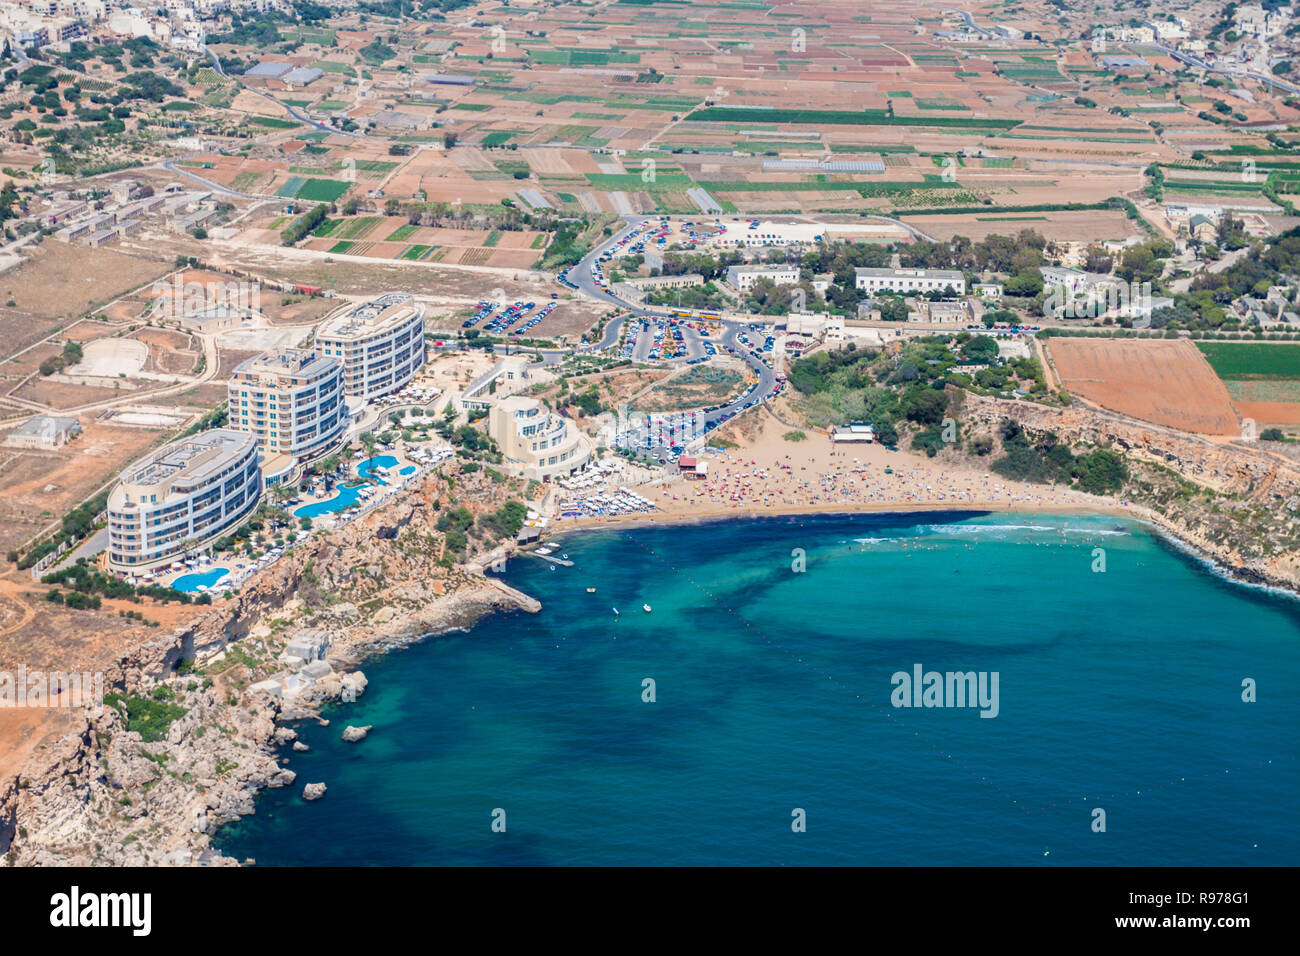 Vue aérienne de Golden bay beach, Ghajn Tuffieha bay. Mellieha (Il-Mellieha), Région du Nord, l'île de Malte. Malte à partir de ci-dessus. Banque D'Images